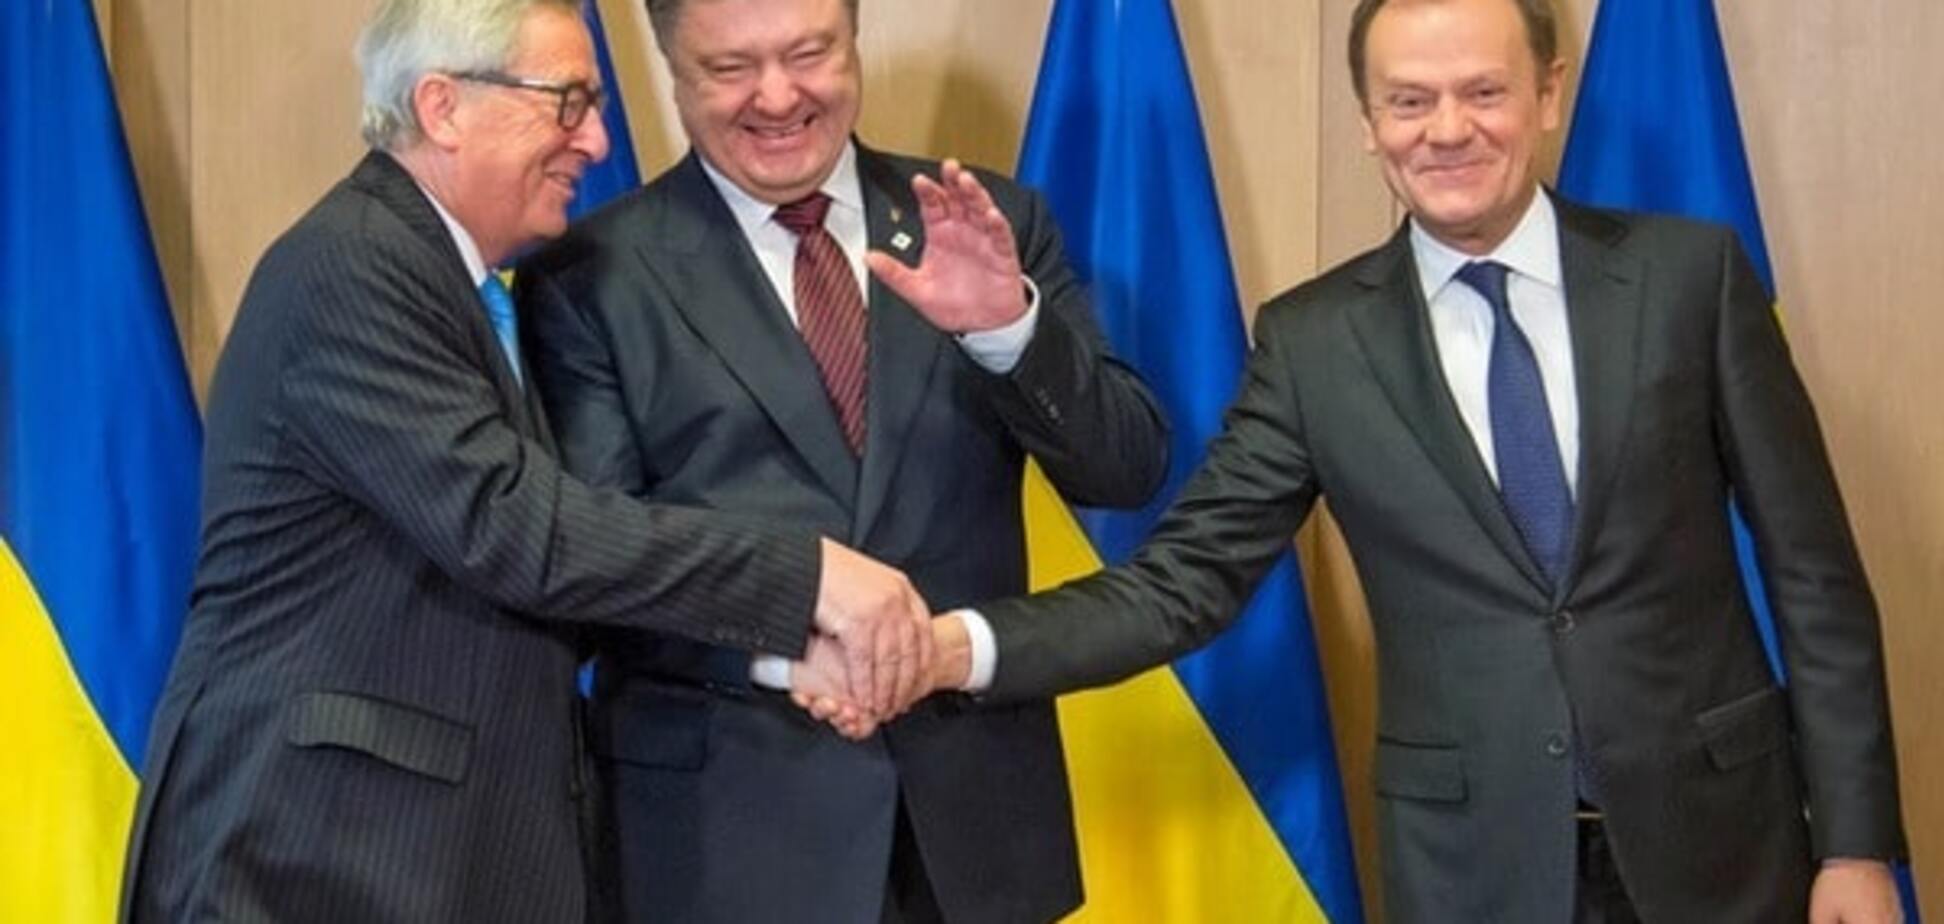 Єврокомісія готова запропонувати скасування віз з Україною вже у квітні - Юнкер